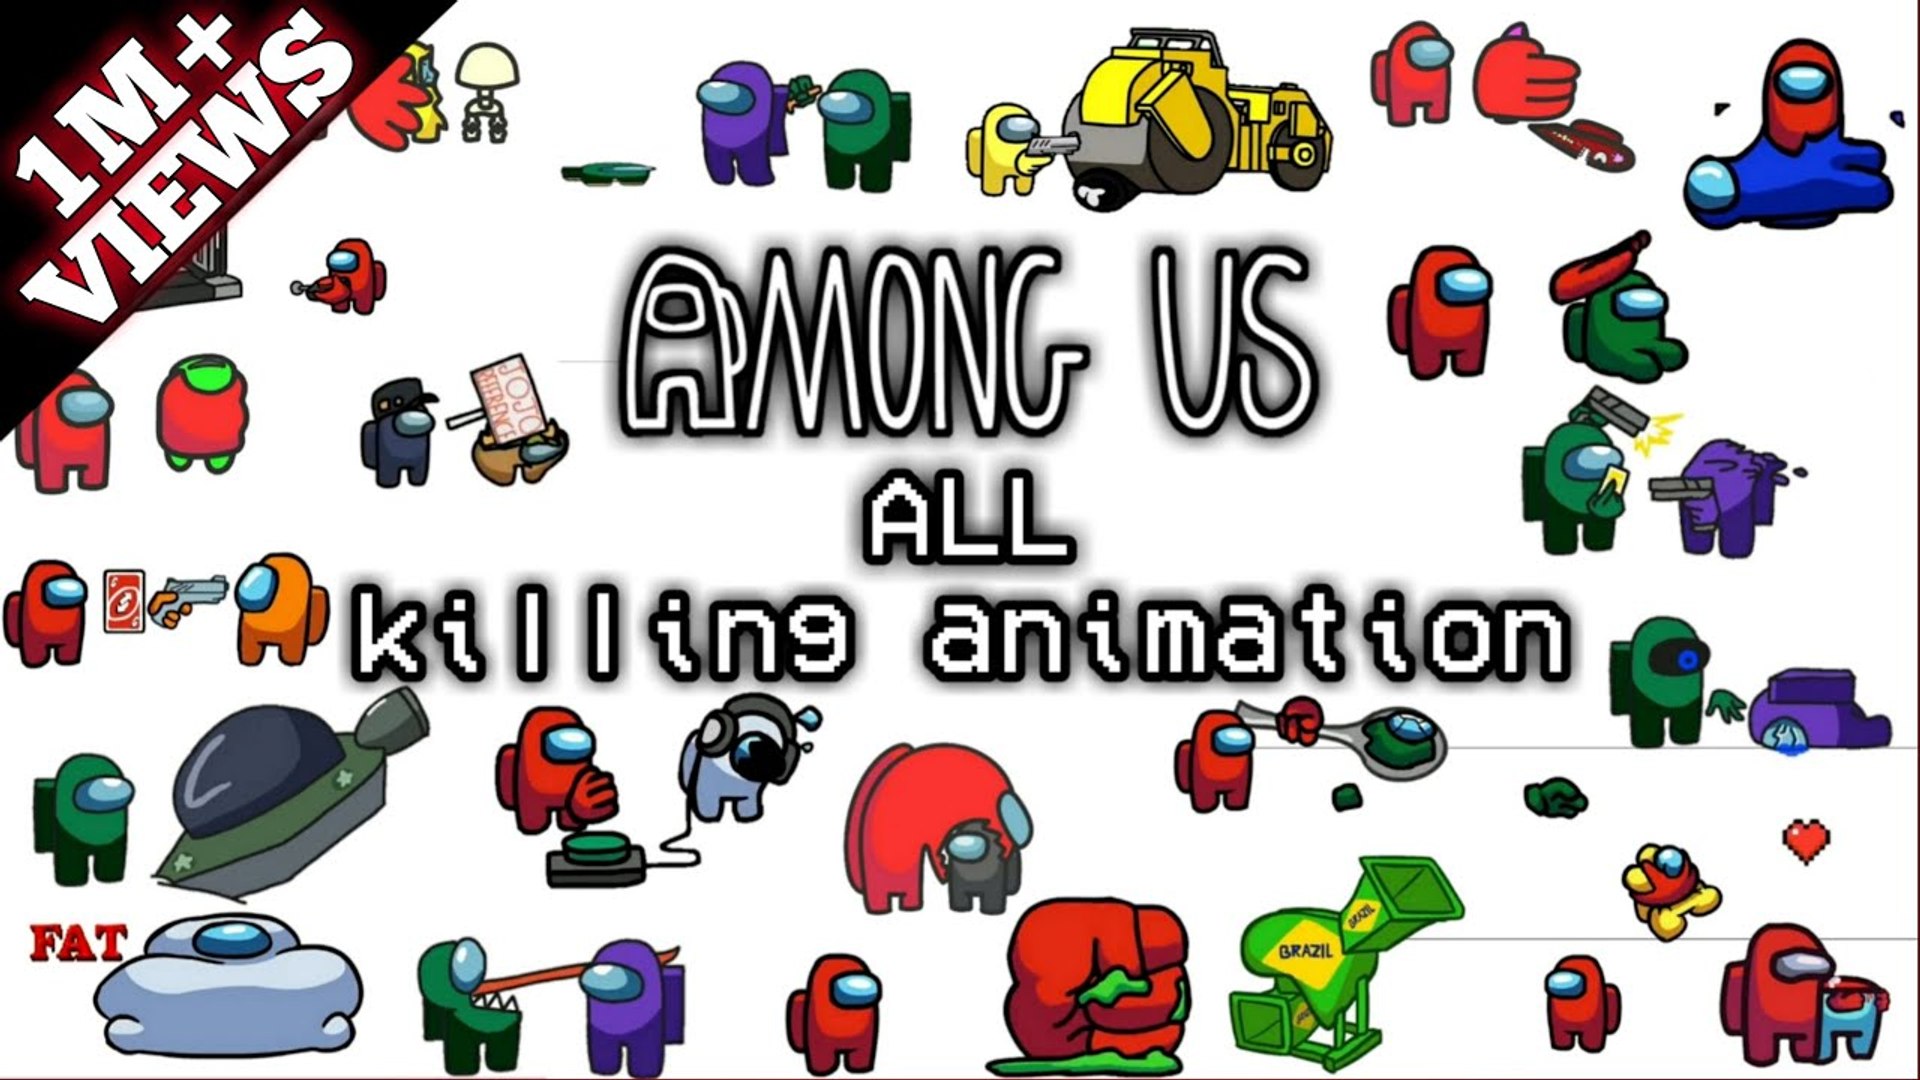 Among Us - Funny Meme Kills Animations 3 